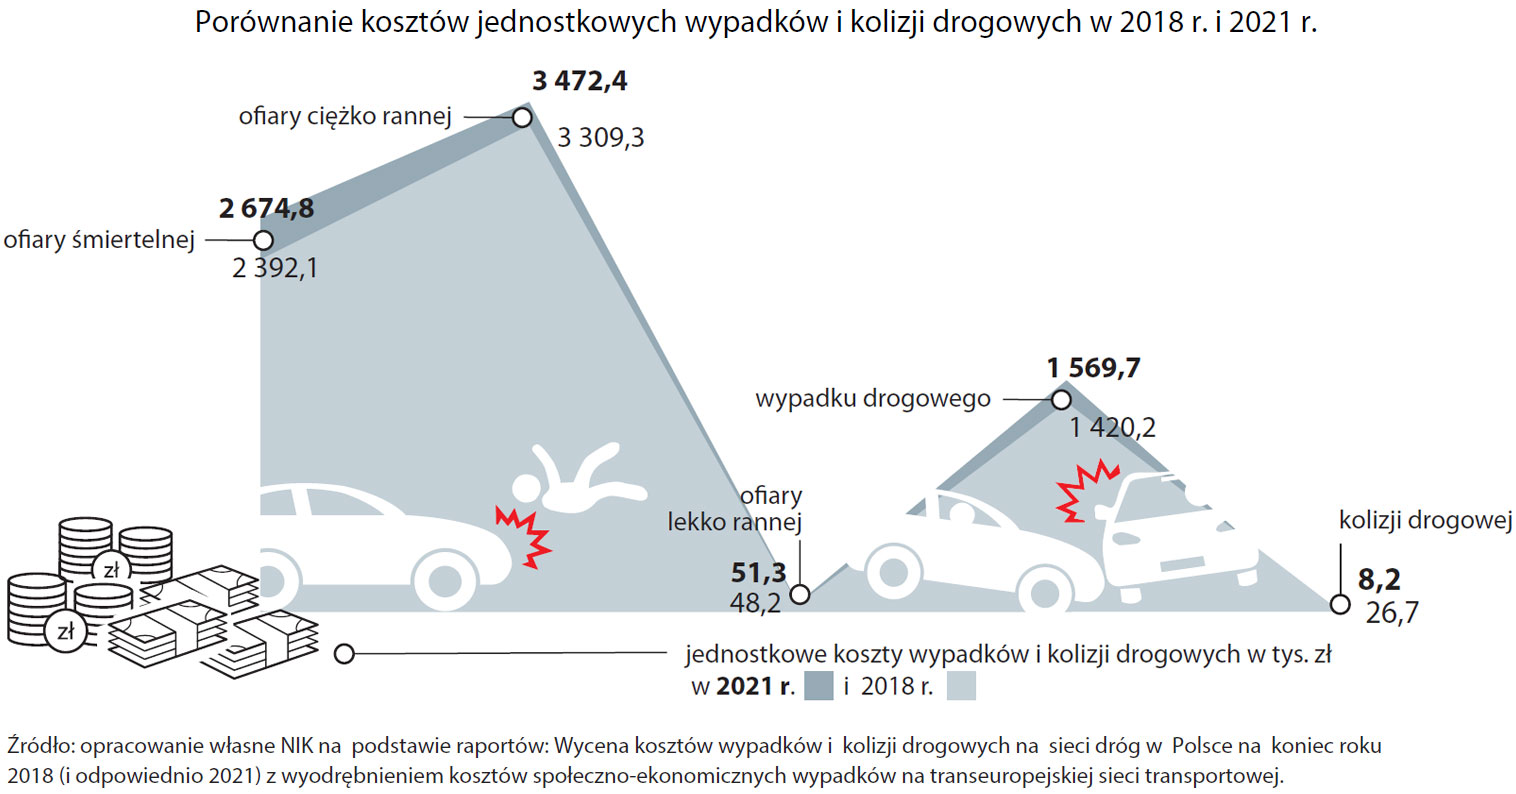 Porównanie kosztów jednostkowych (w tys. zł) wypadków i kolizji drogowych (opis grafiki poniżej)